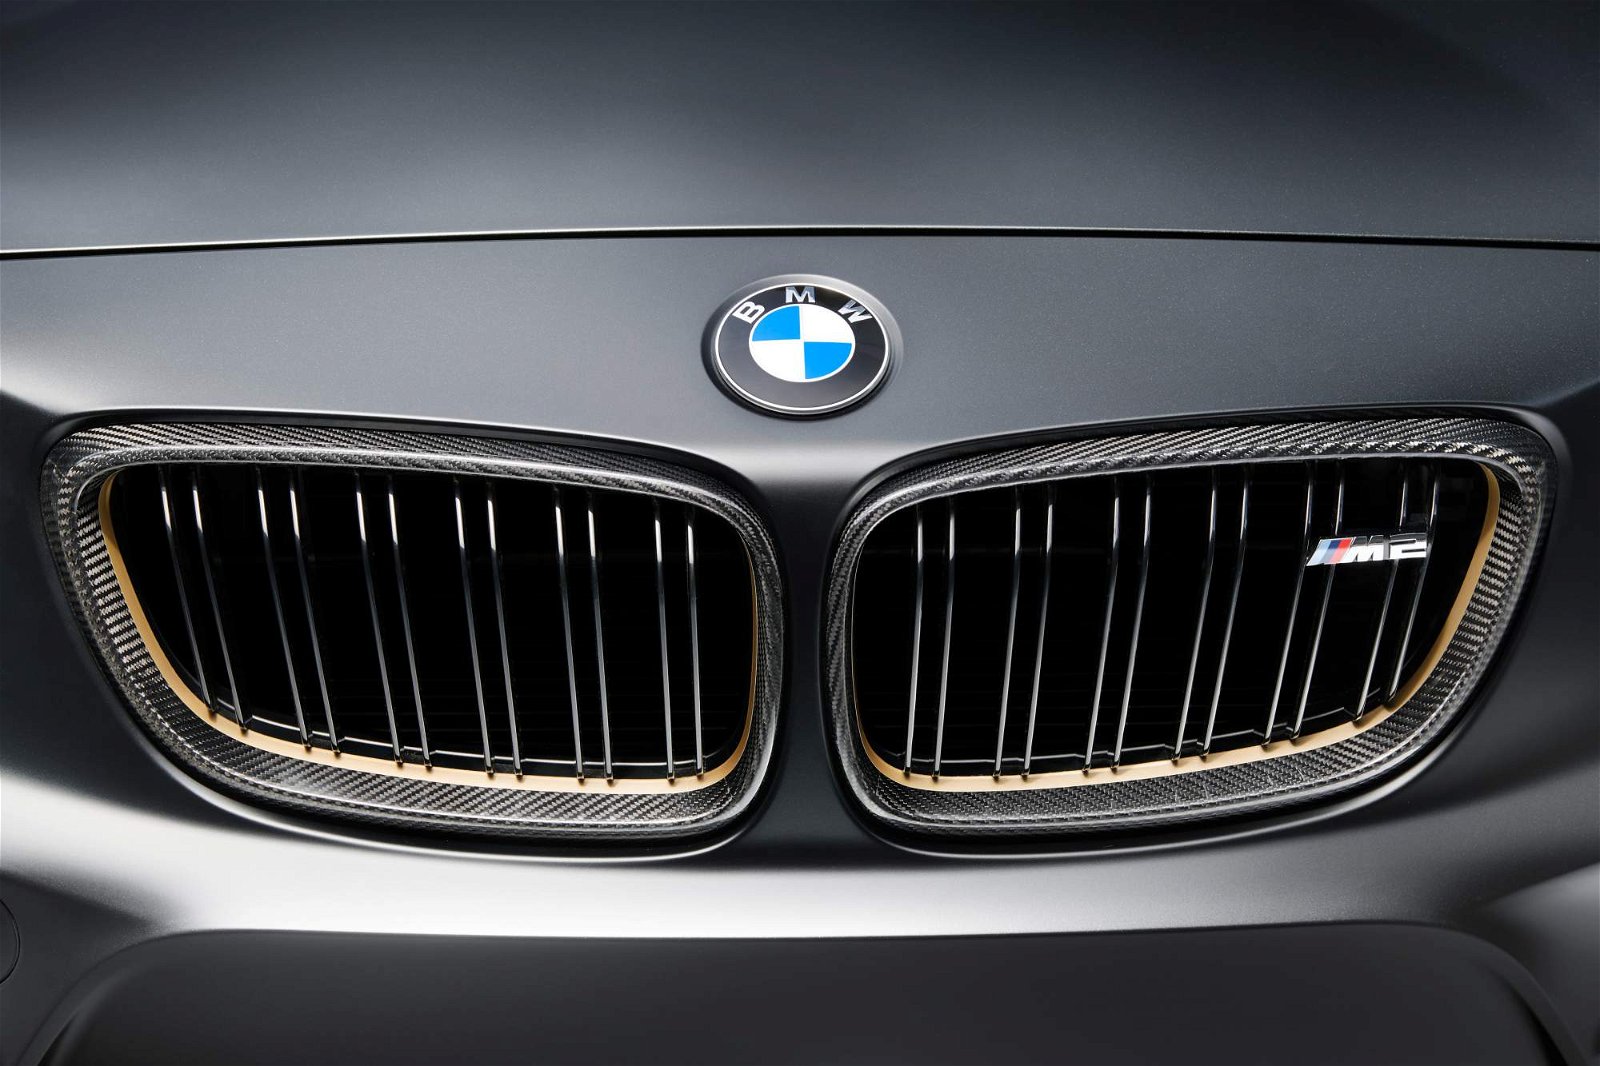 BMW-M-Performance-Parts-Concept-12